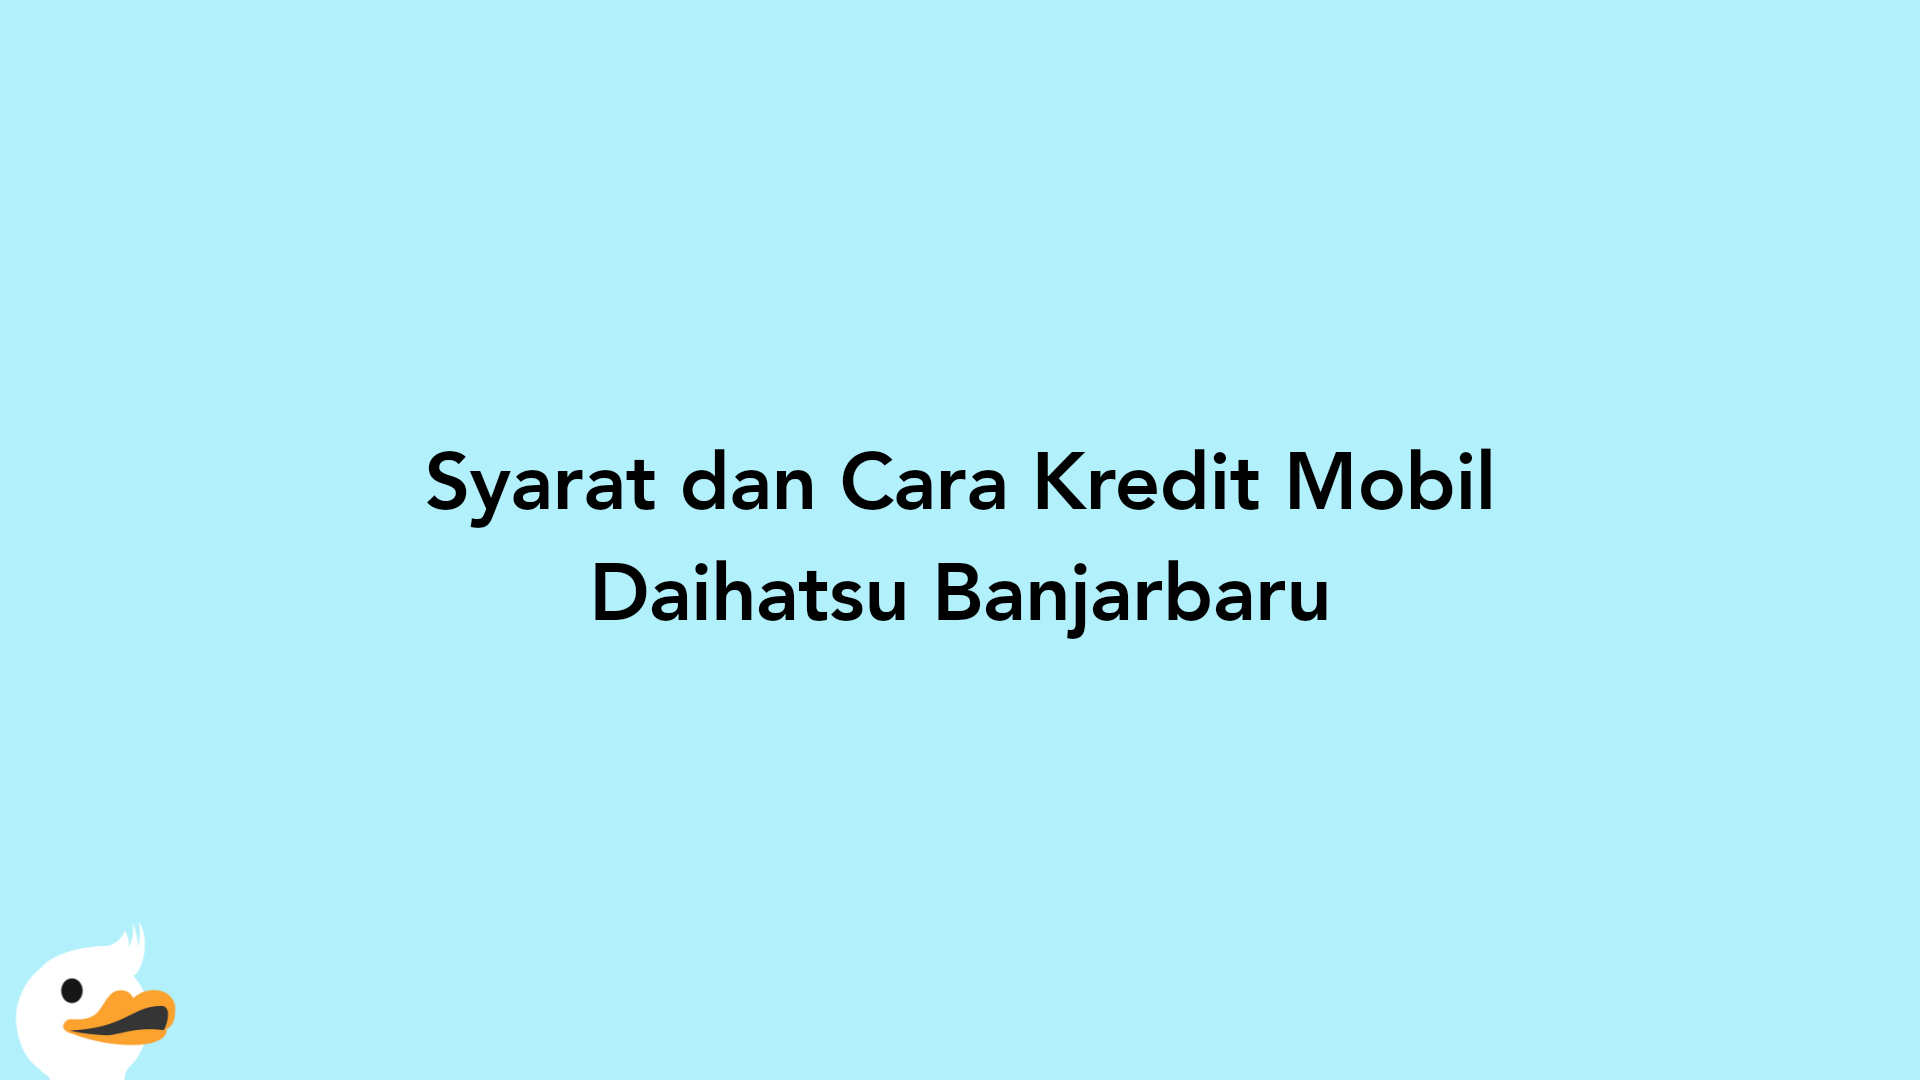 Syarat dan Cara Kredit Mobil Daihatsu Banjarbaru